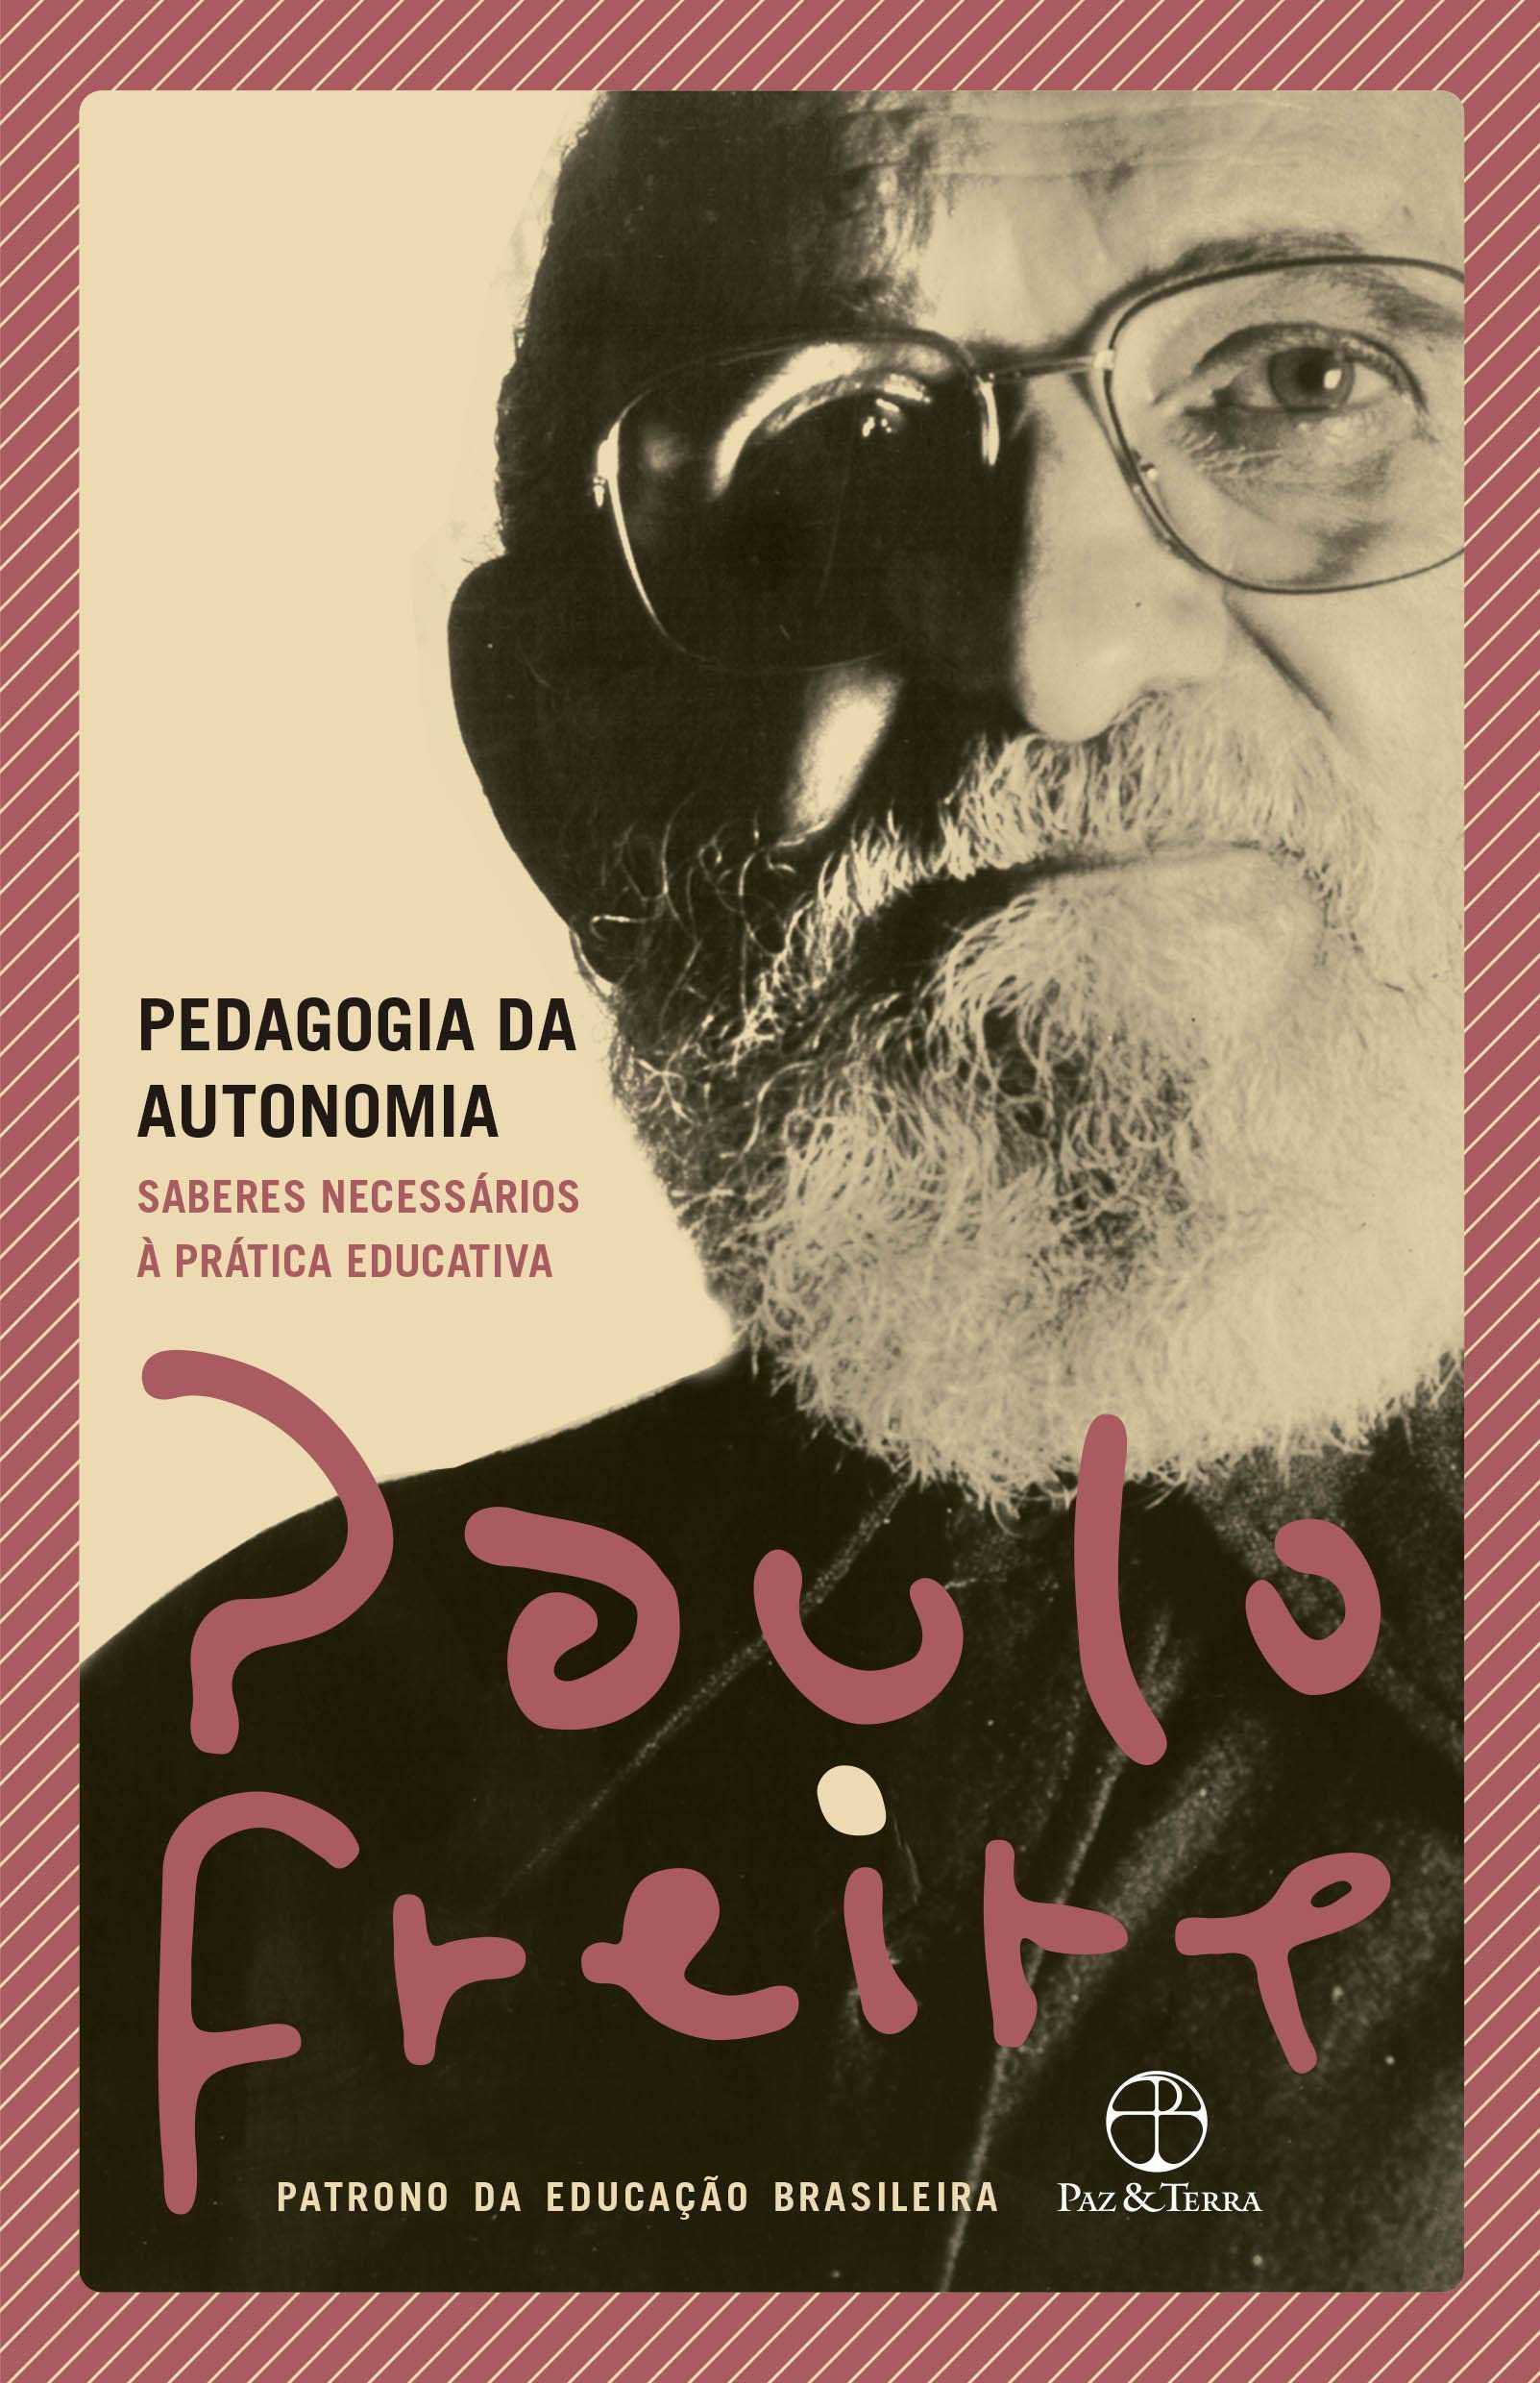 Rudolf Steiner e Paulo Freire - Obras raras sobre educação